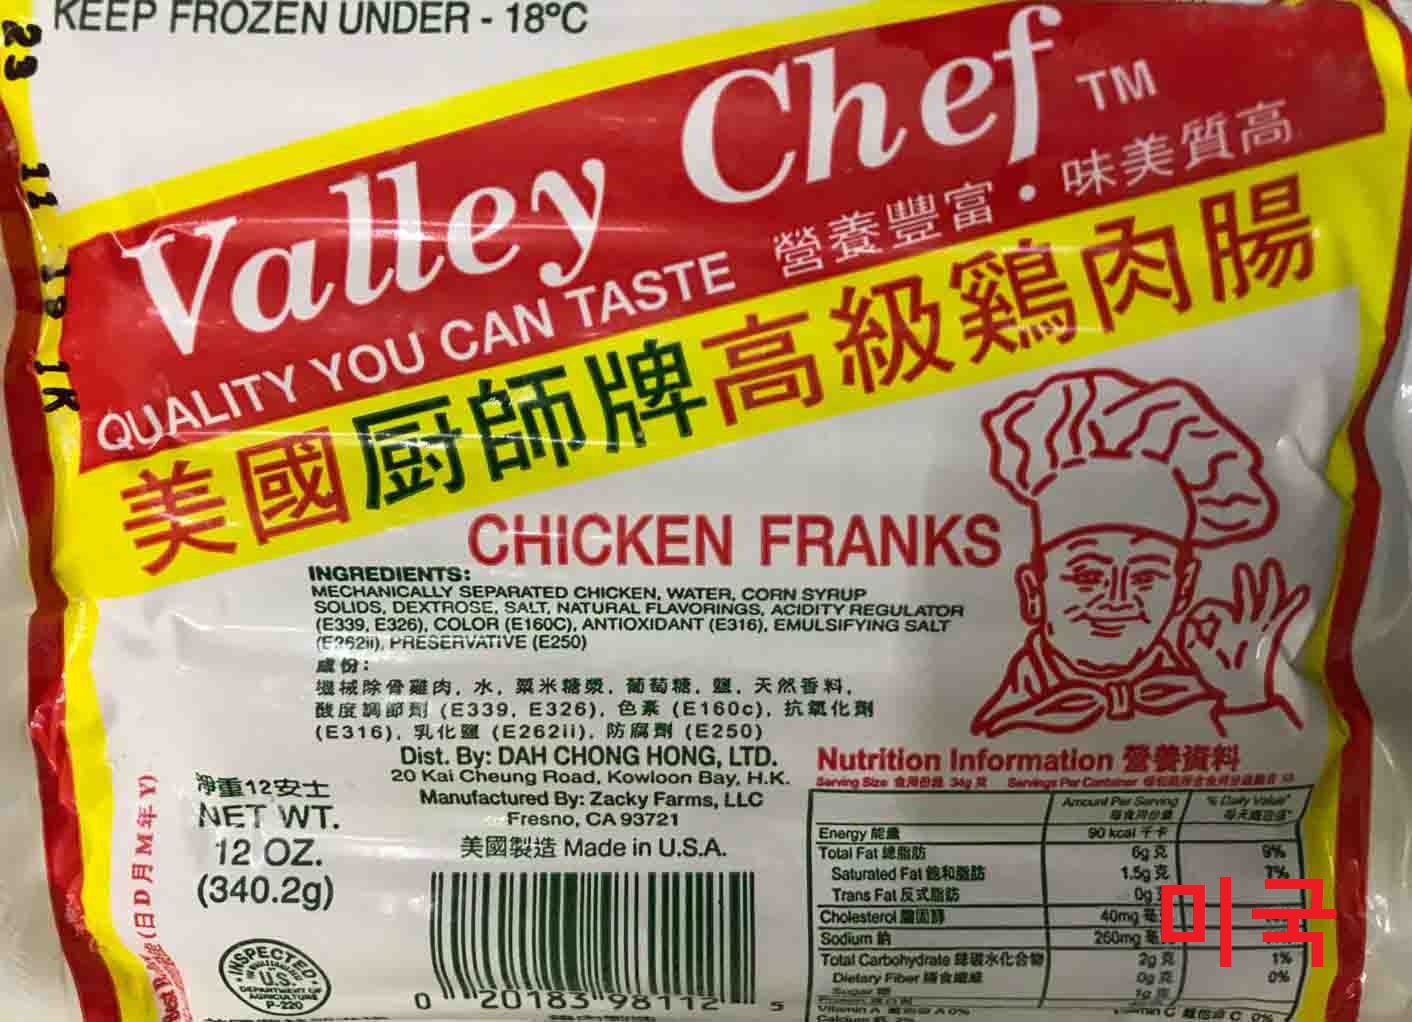 미국에서 생산 된 "Valley Chef"닭고기 소시지